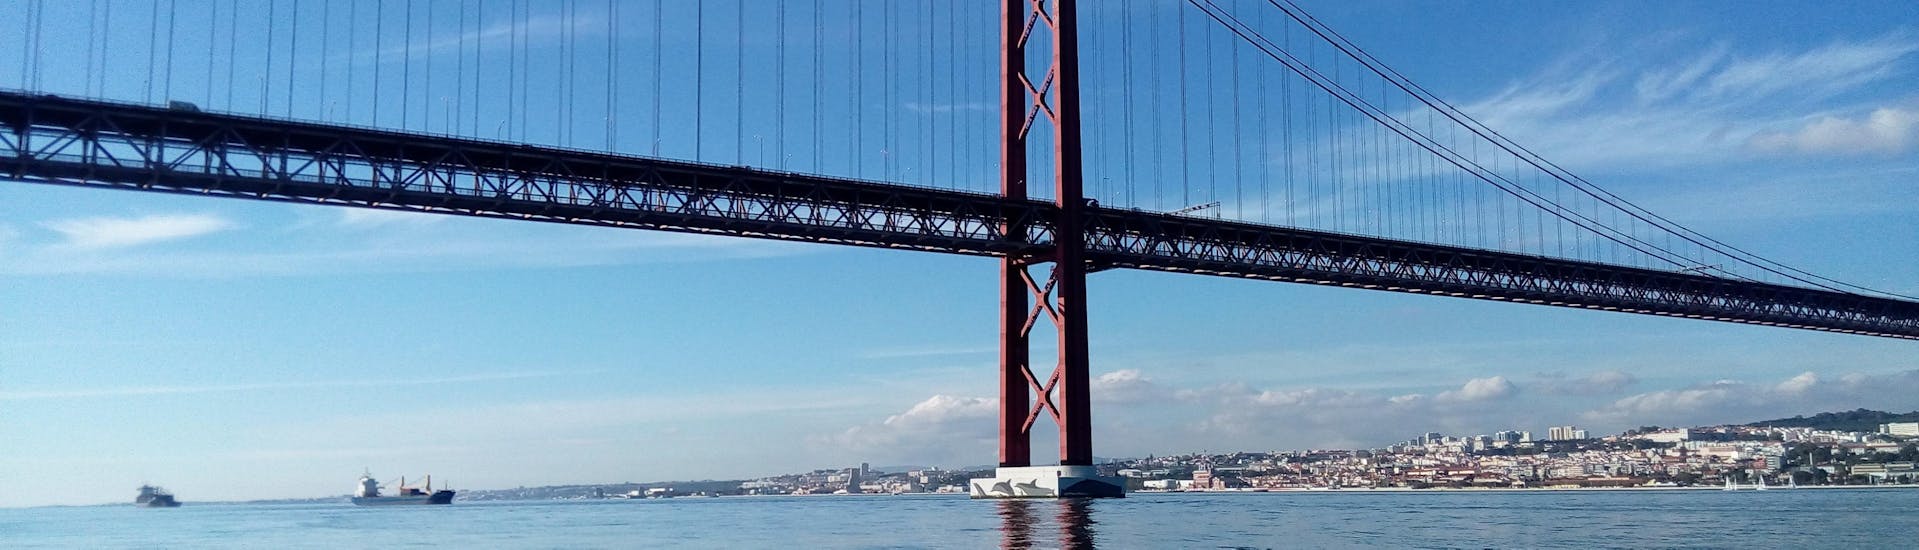 Die majestätische Ponte Vasco da Gama kann während dieser Bootsfahrt auf dem Tejo inkl. Ponte Vasco da Gama mit Lissabon per Boot bewundert werden.